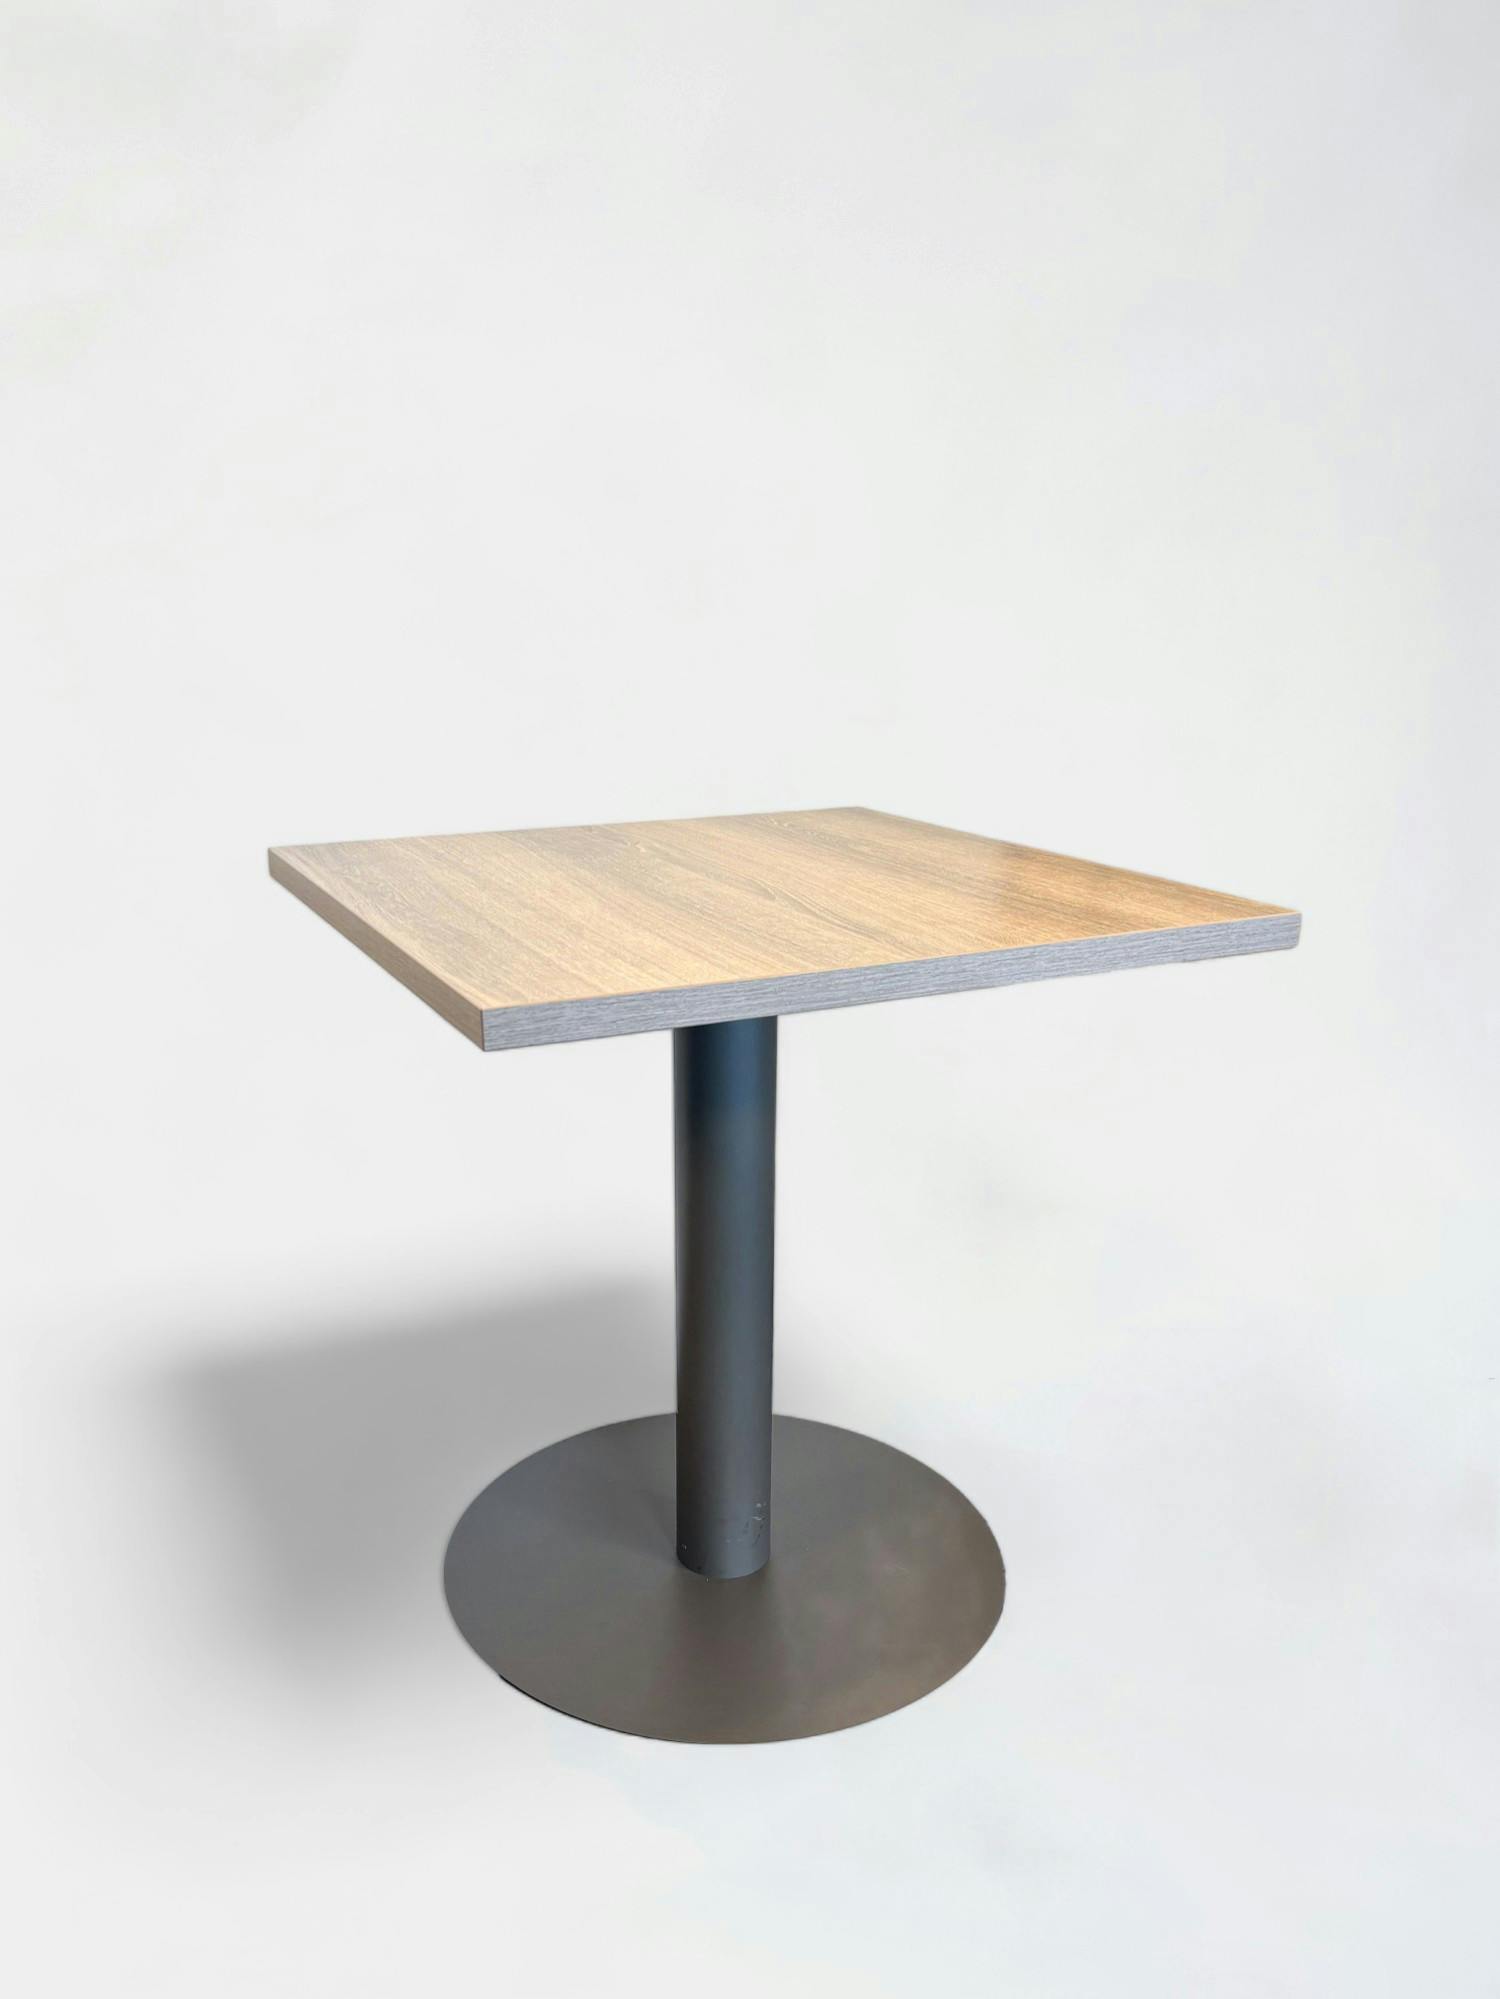 Table ergonomique en bois gris avec base circulaire robuste - Relieve Furniture